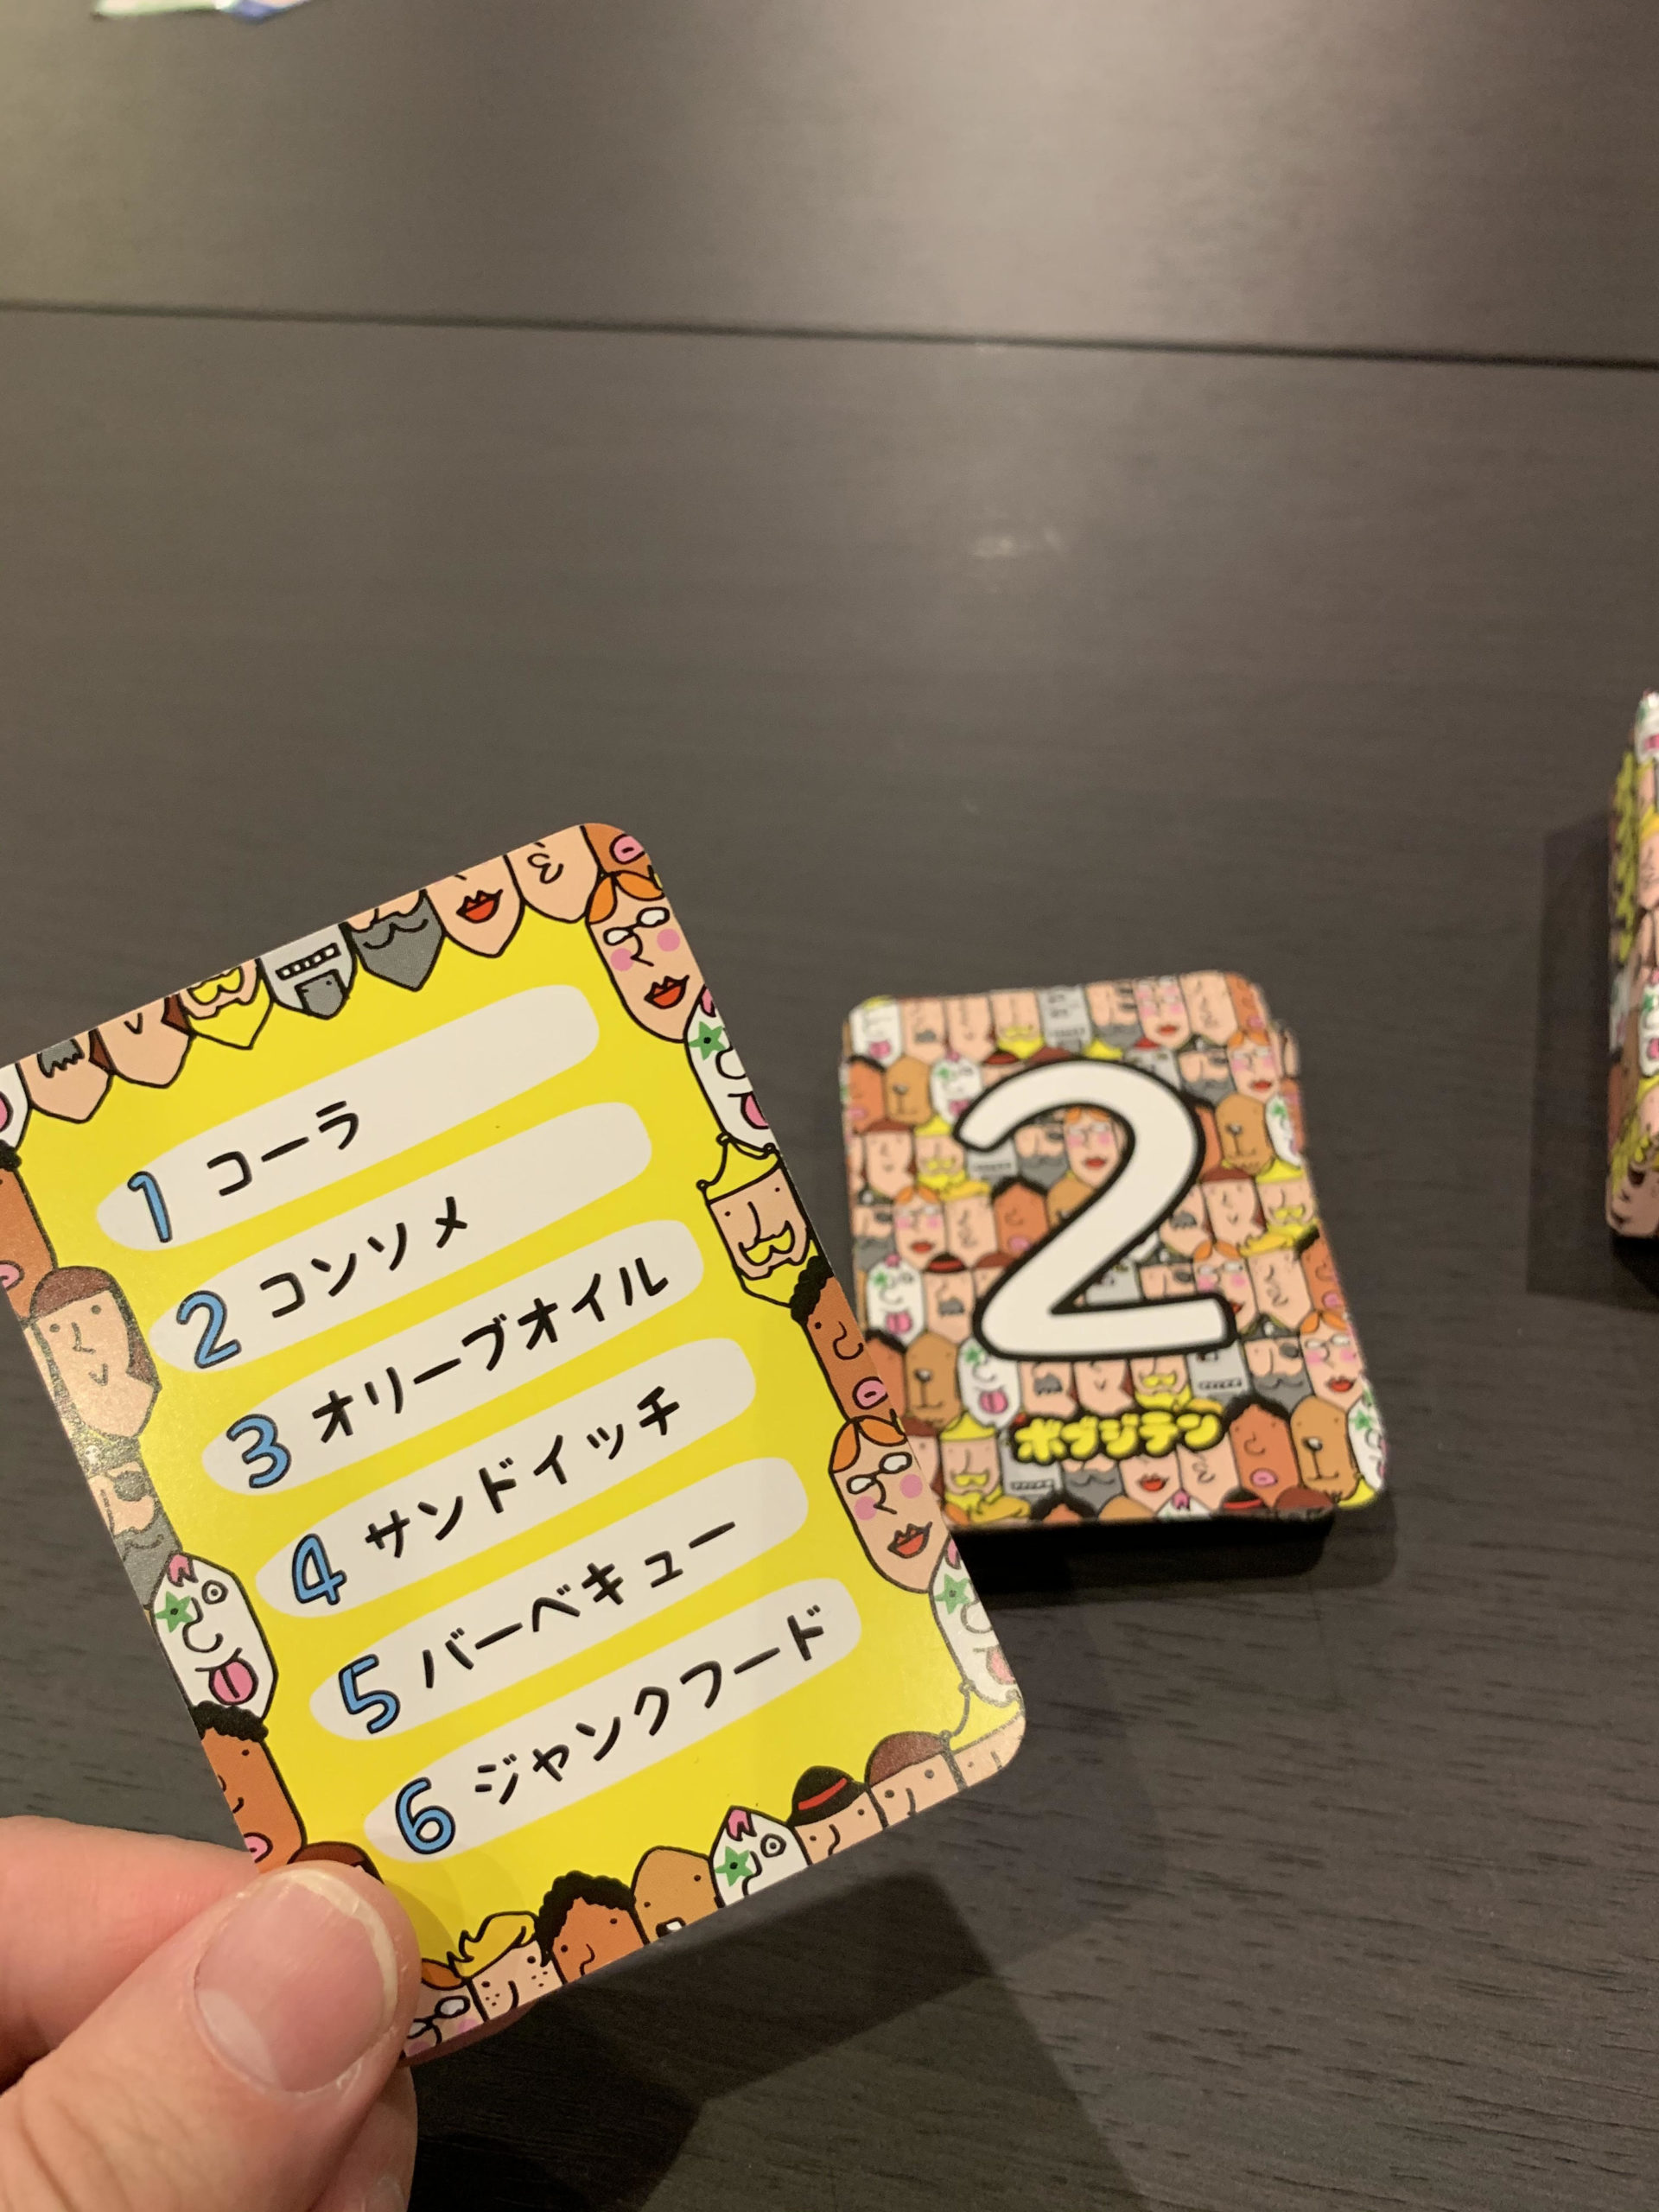 ボブジテン カタカナ語を日本語だけで説明するボードゲーム♪ | ボードゲームバーボーダレス